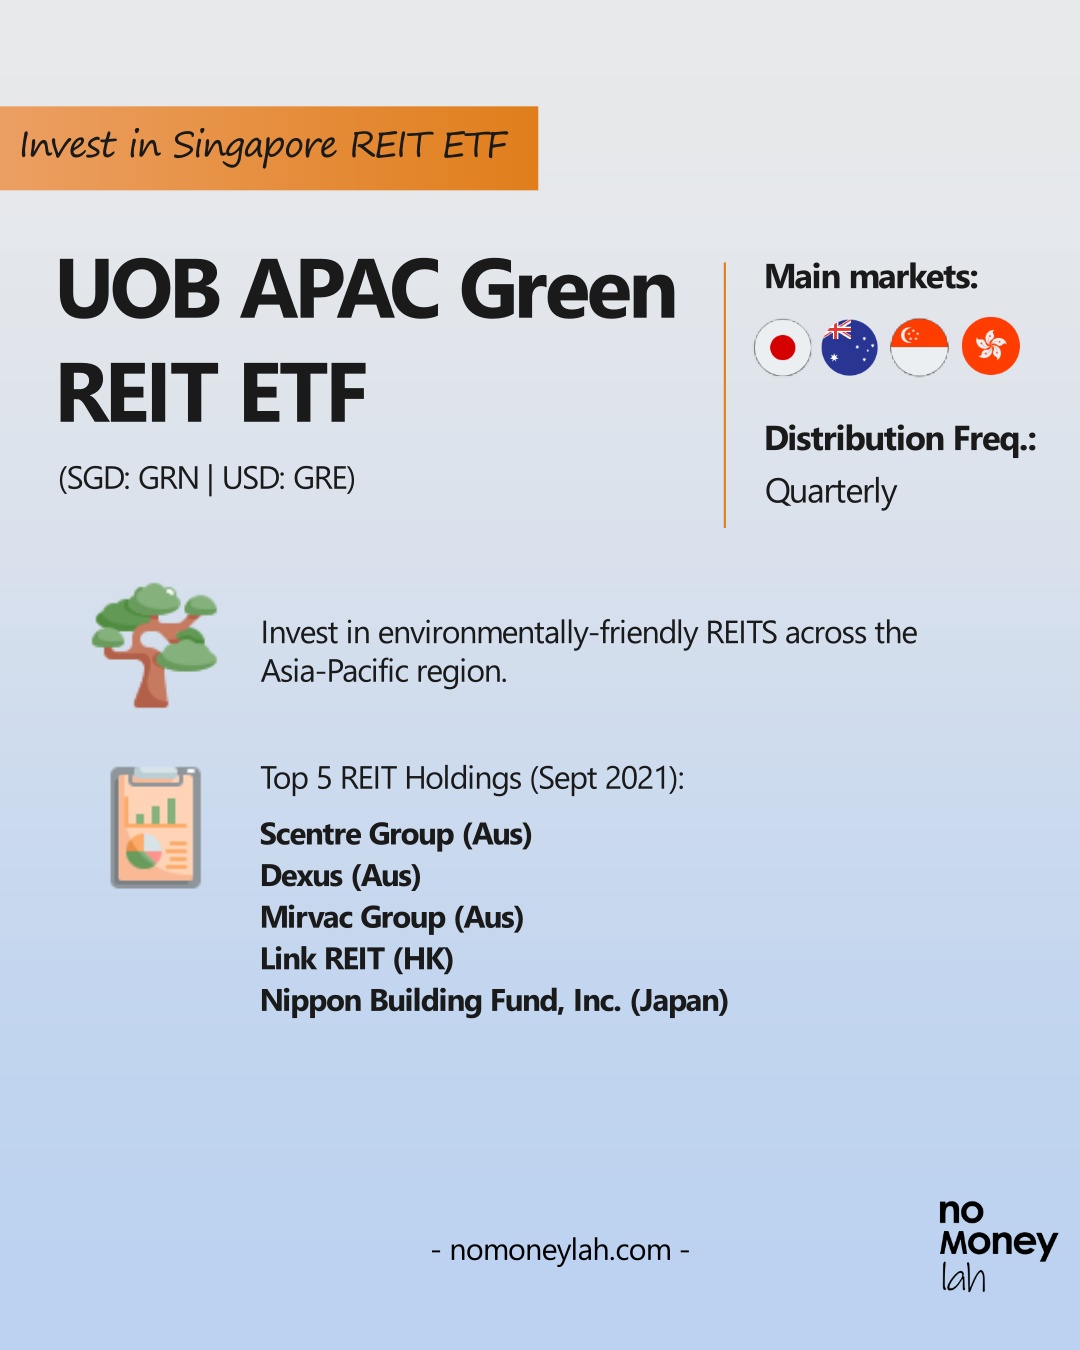 UOB APAC Green REIT ETF